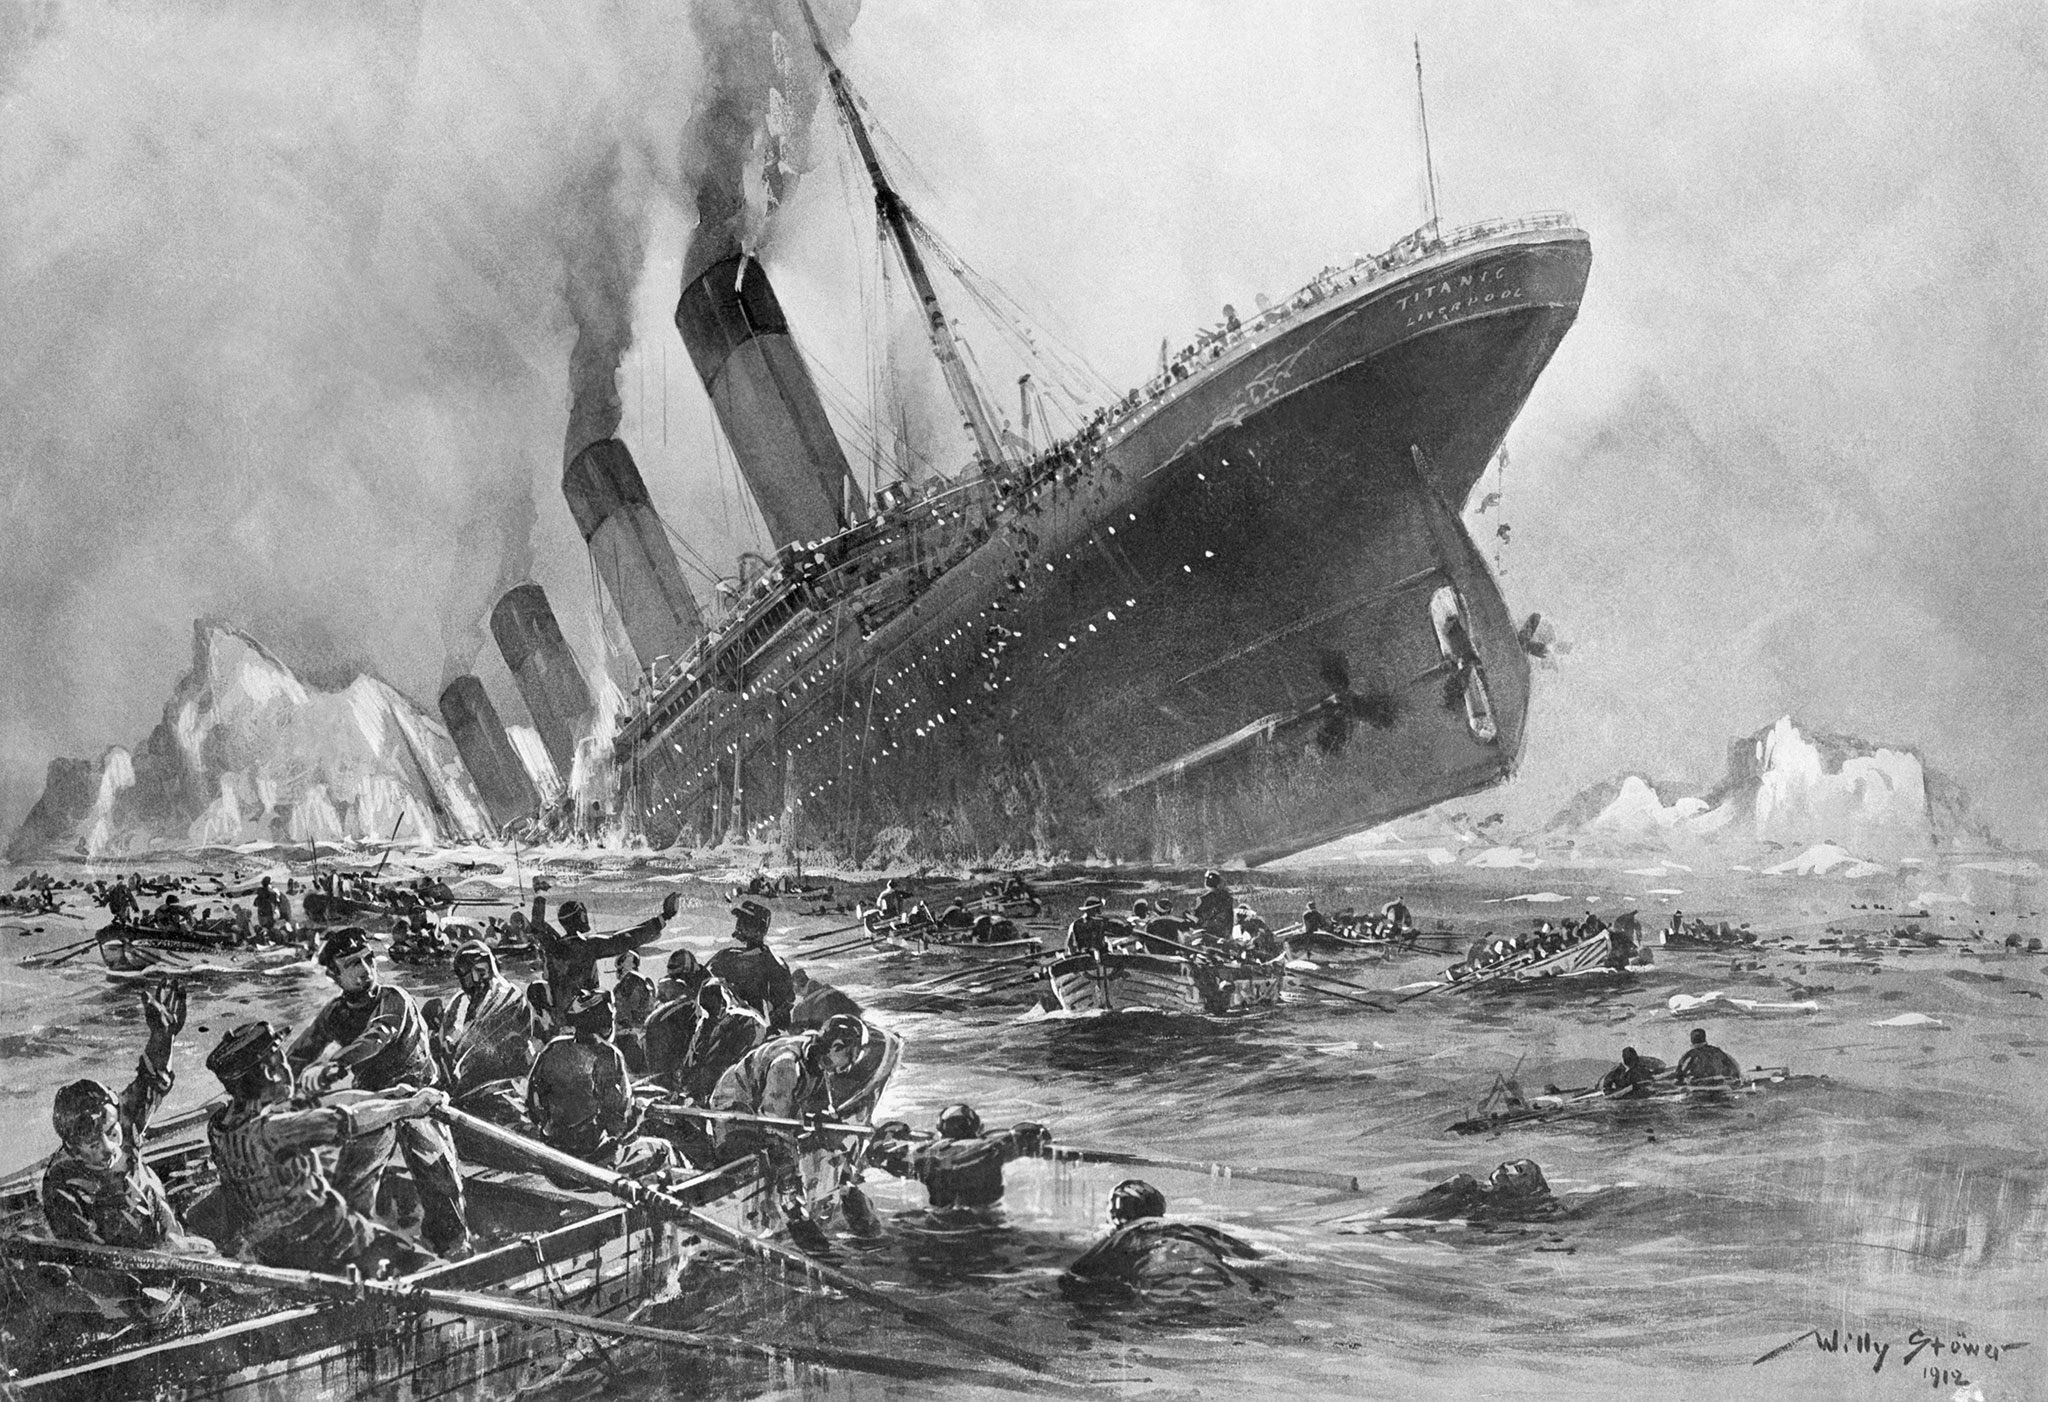 Hogyan élték túl a Titanic katasztrófáját?